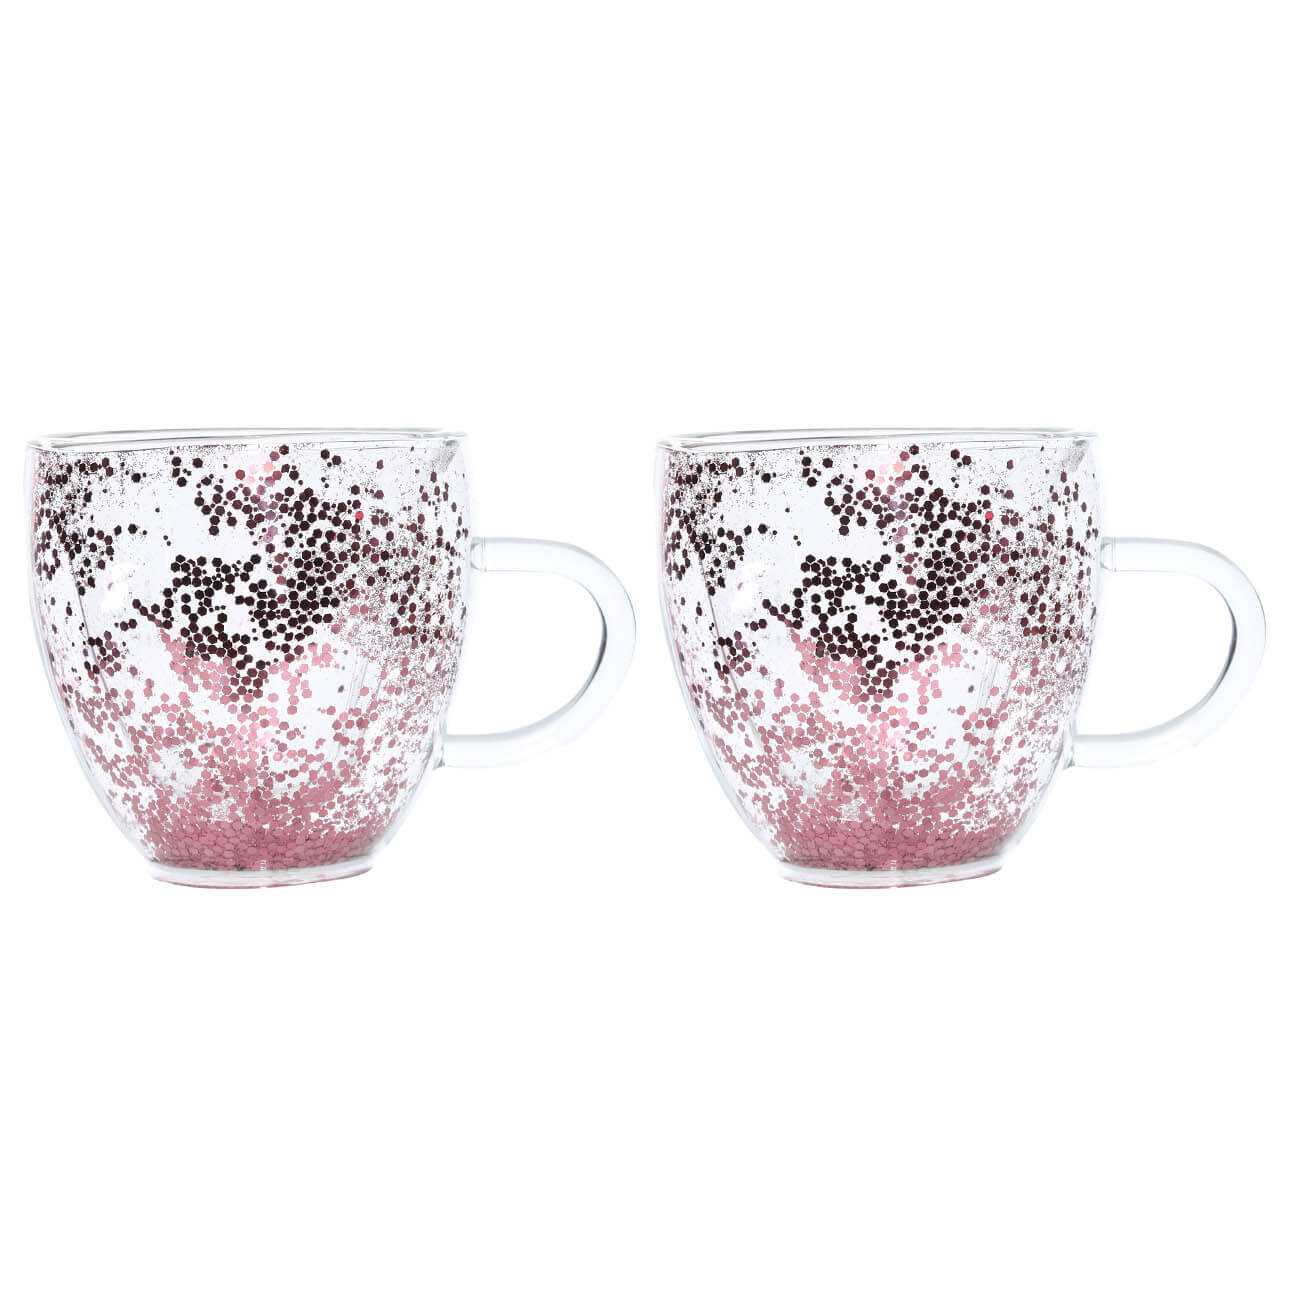 Кружка, 250 мл, 2 шт, стекло Б, с розовыми блестками, Heart, Air sparkly изображение № 1